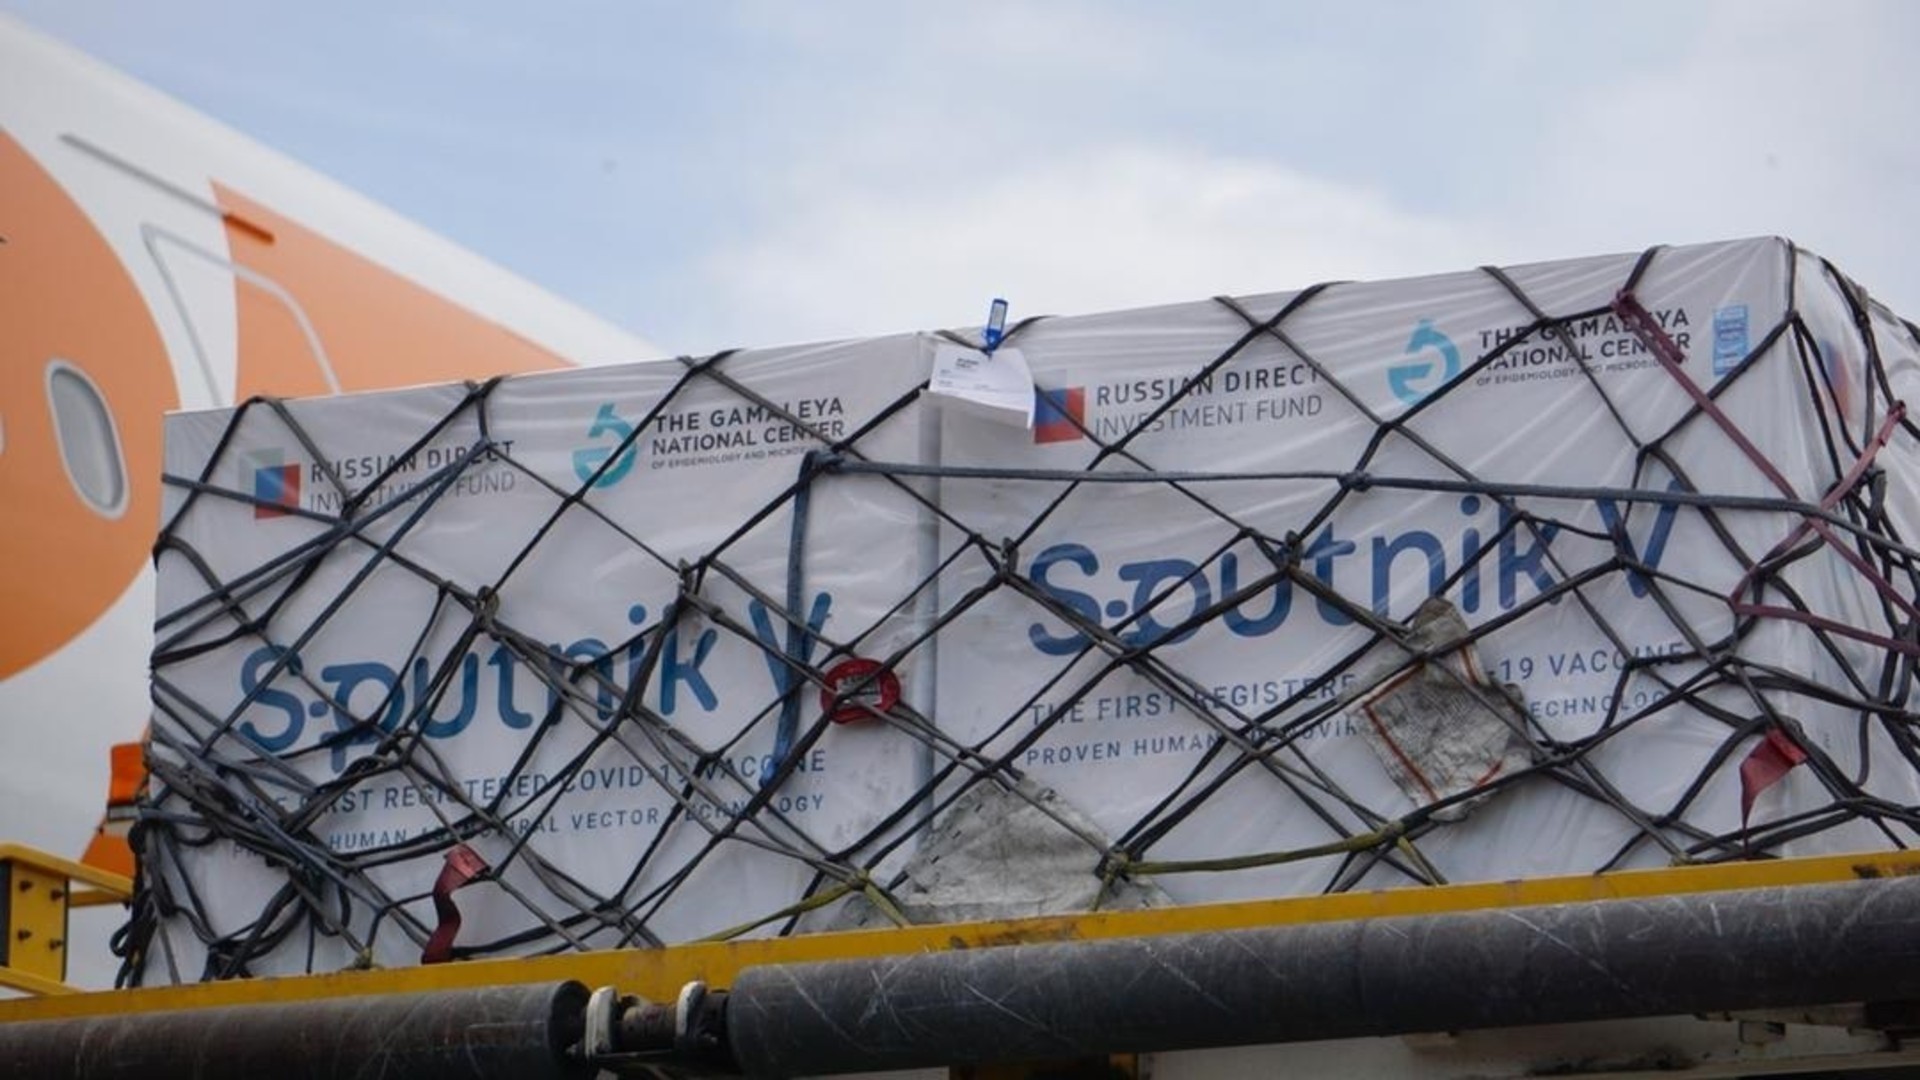 La Sputnik-V asegura más negocios rusos en Venezuela